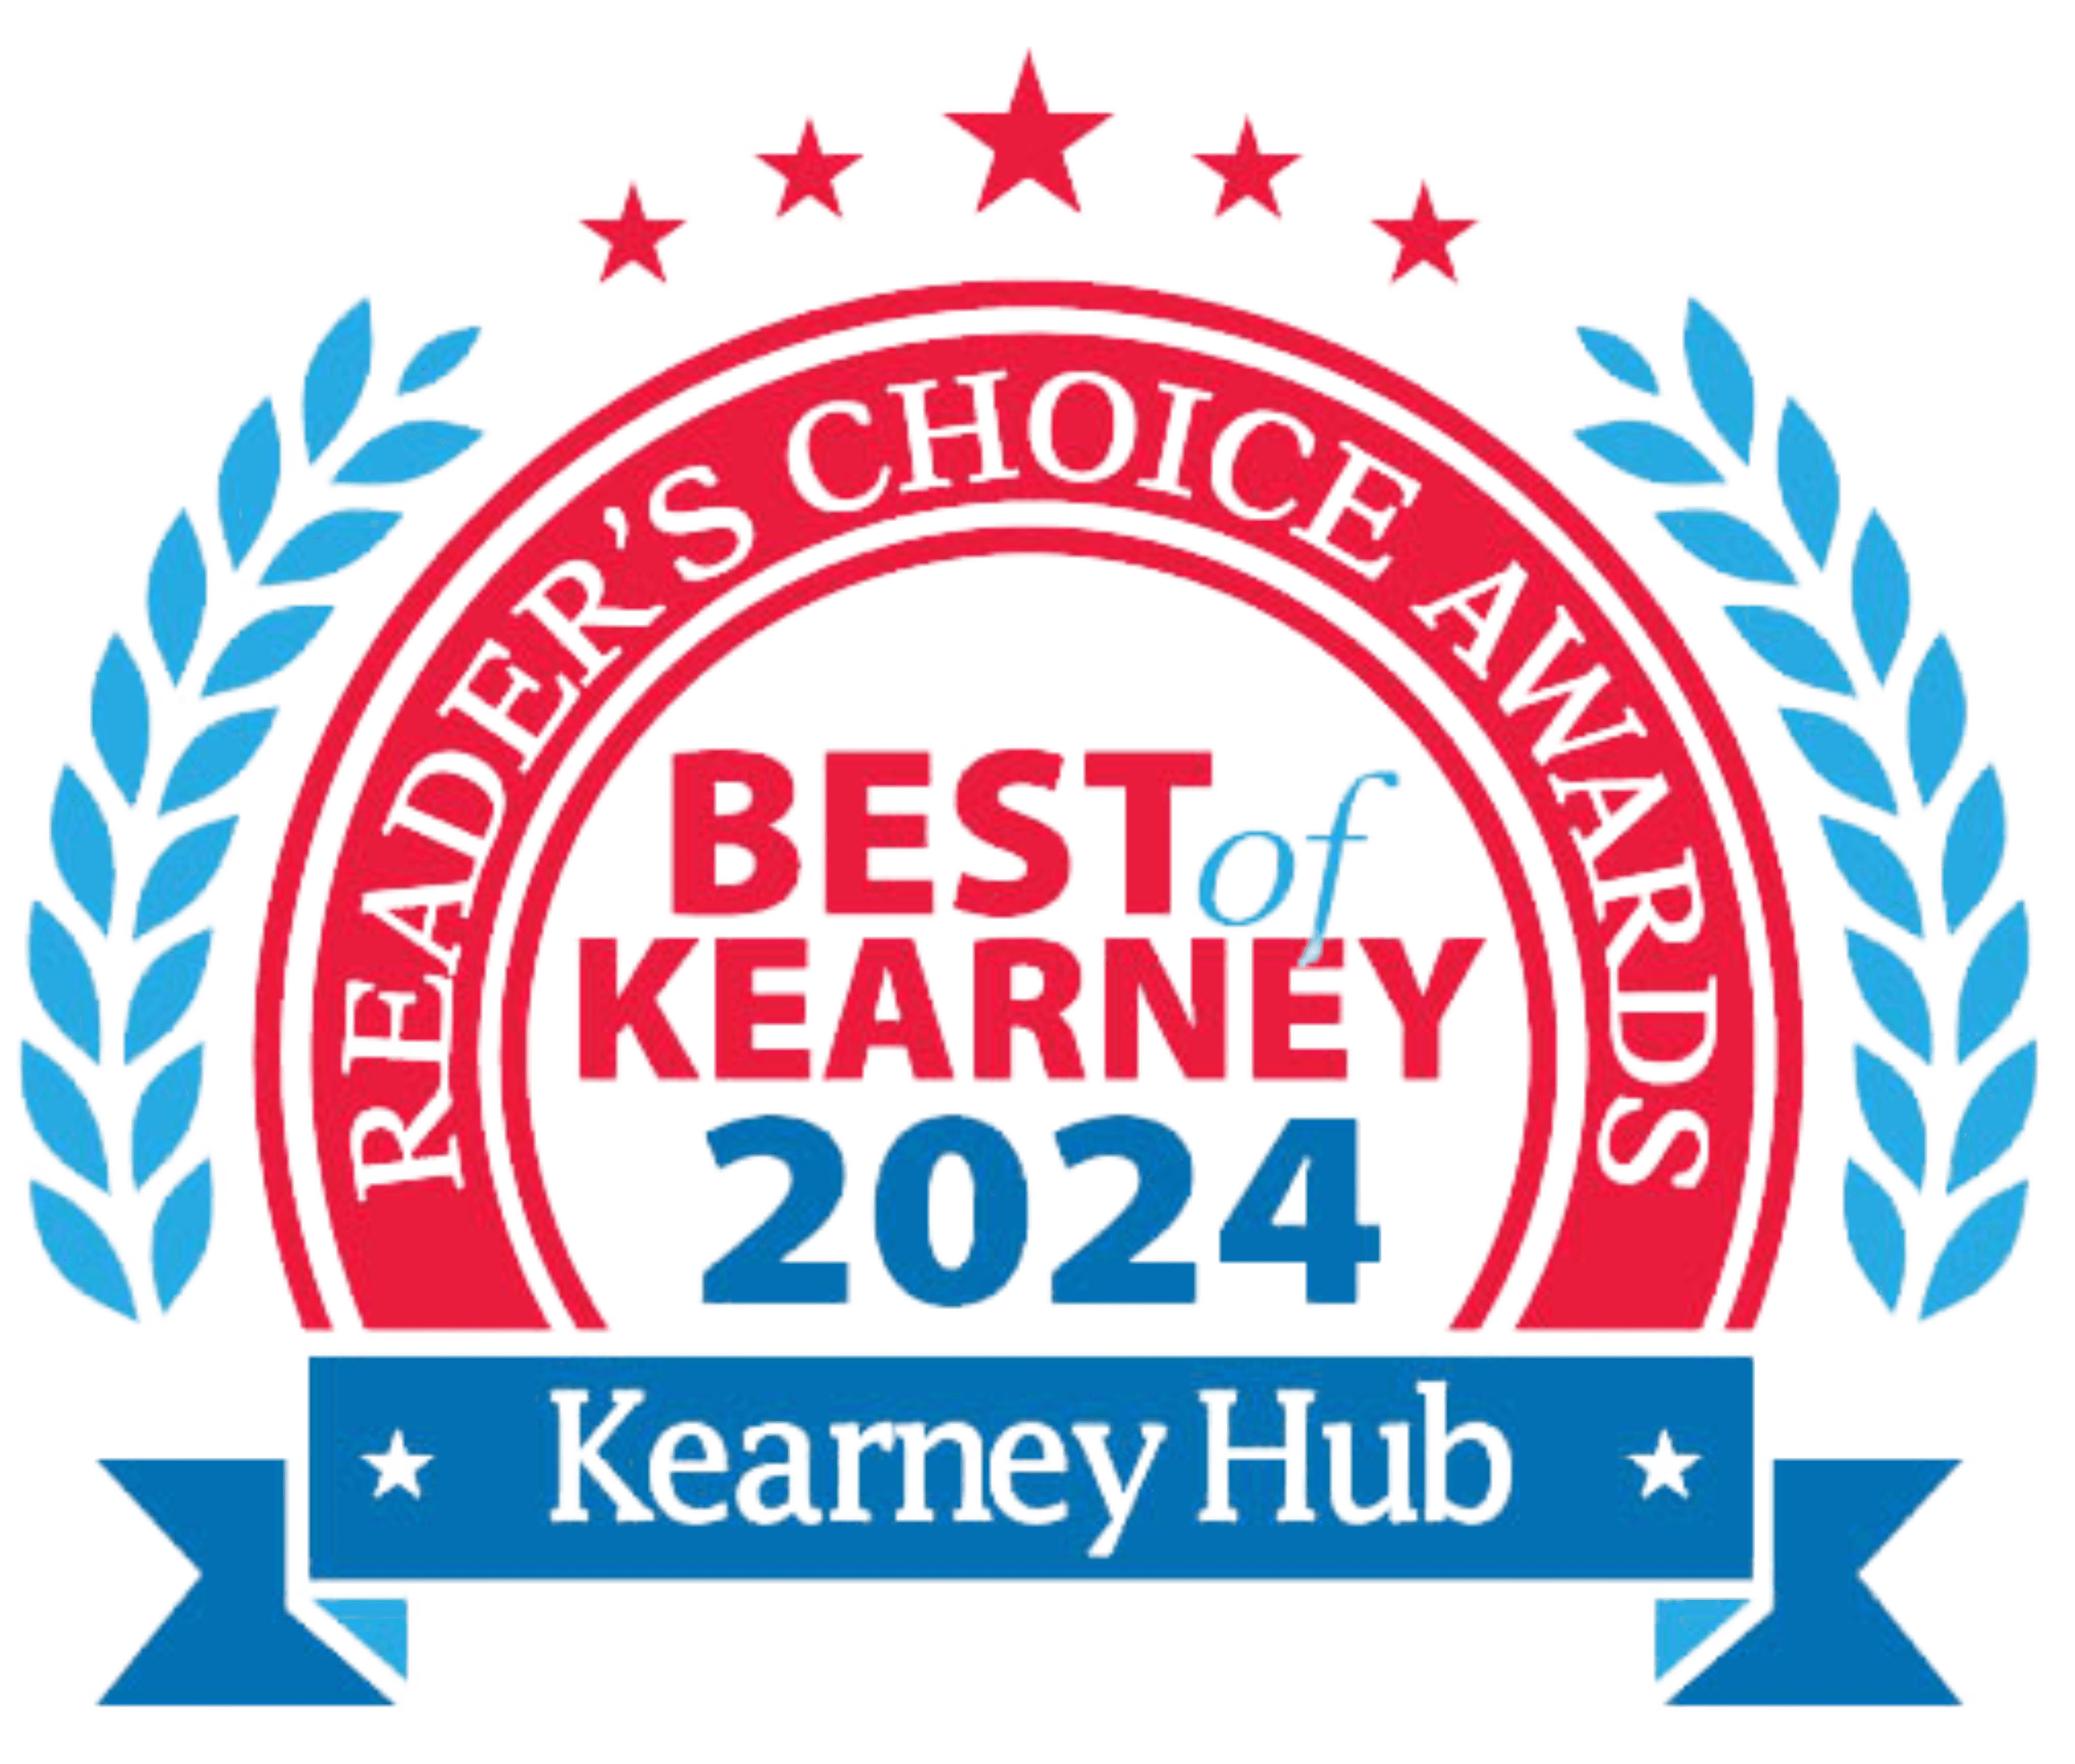 Best of Kearney 2023